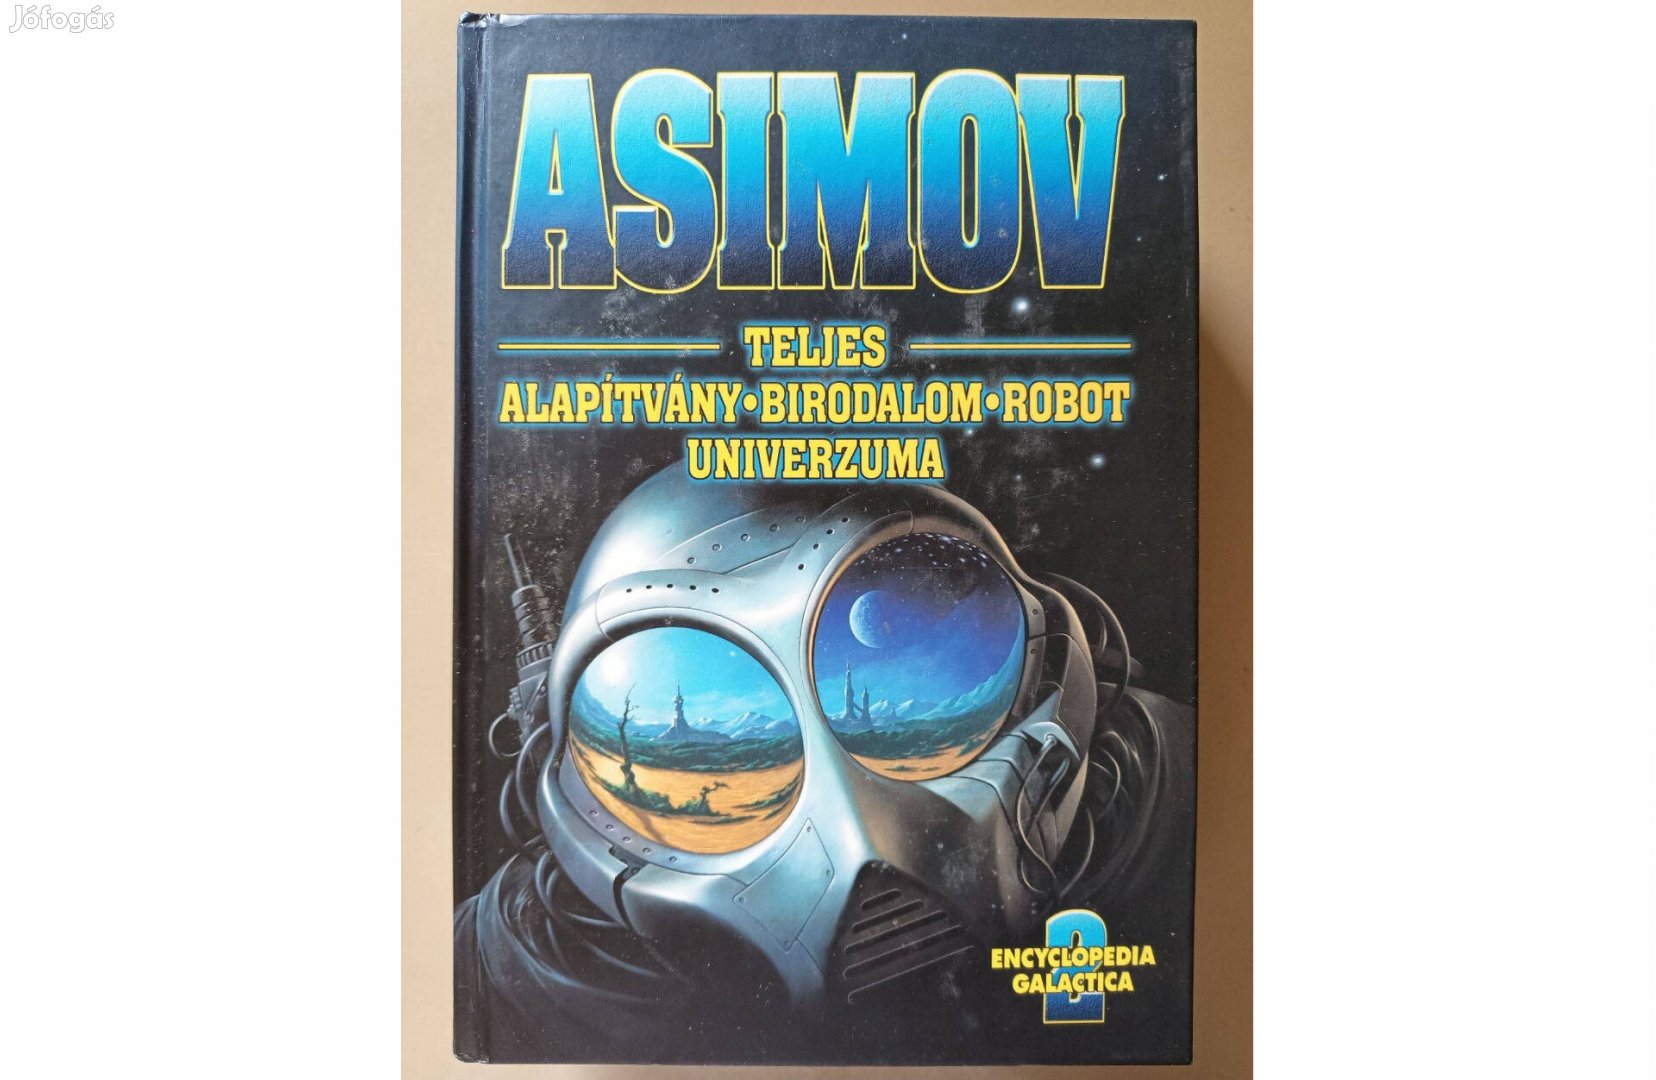 Isaac Asimov Teljes Alapítvány Birodalom Robot univerzuma 2. köte